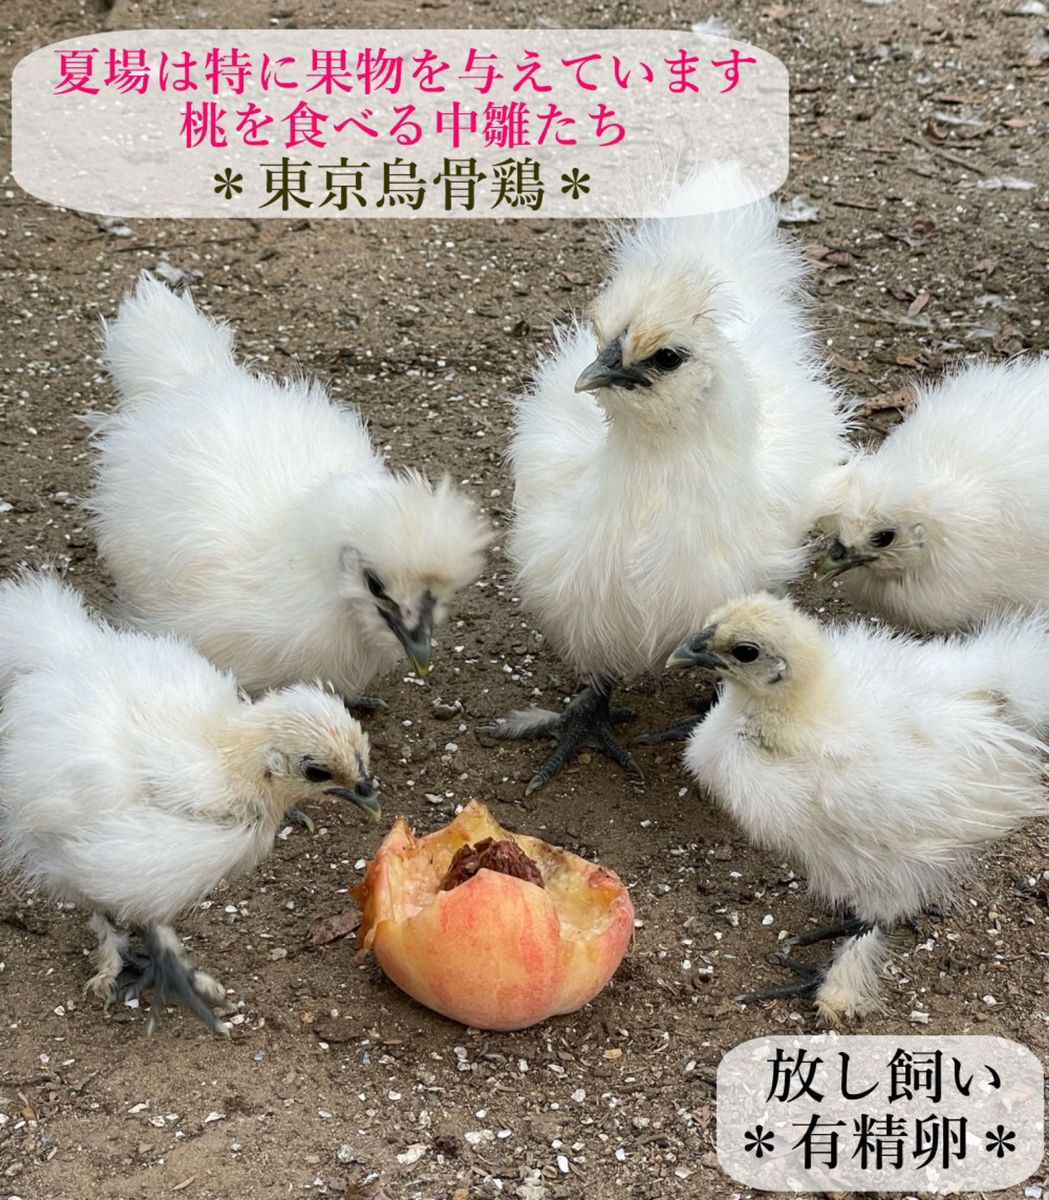 東京烏骨鶏 烏骨鶏 15個 有精卵 放し飼い ふわふわ もこもこ 送料無料